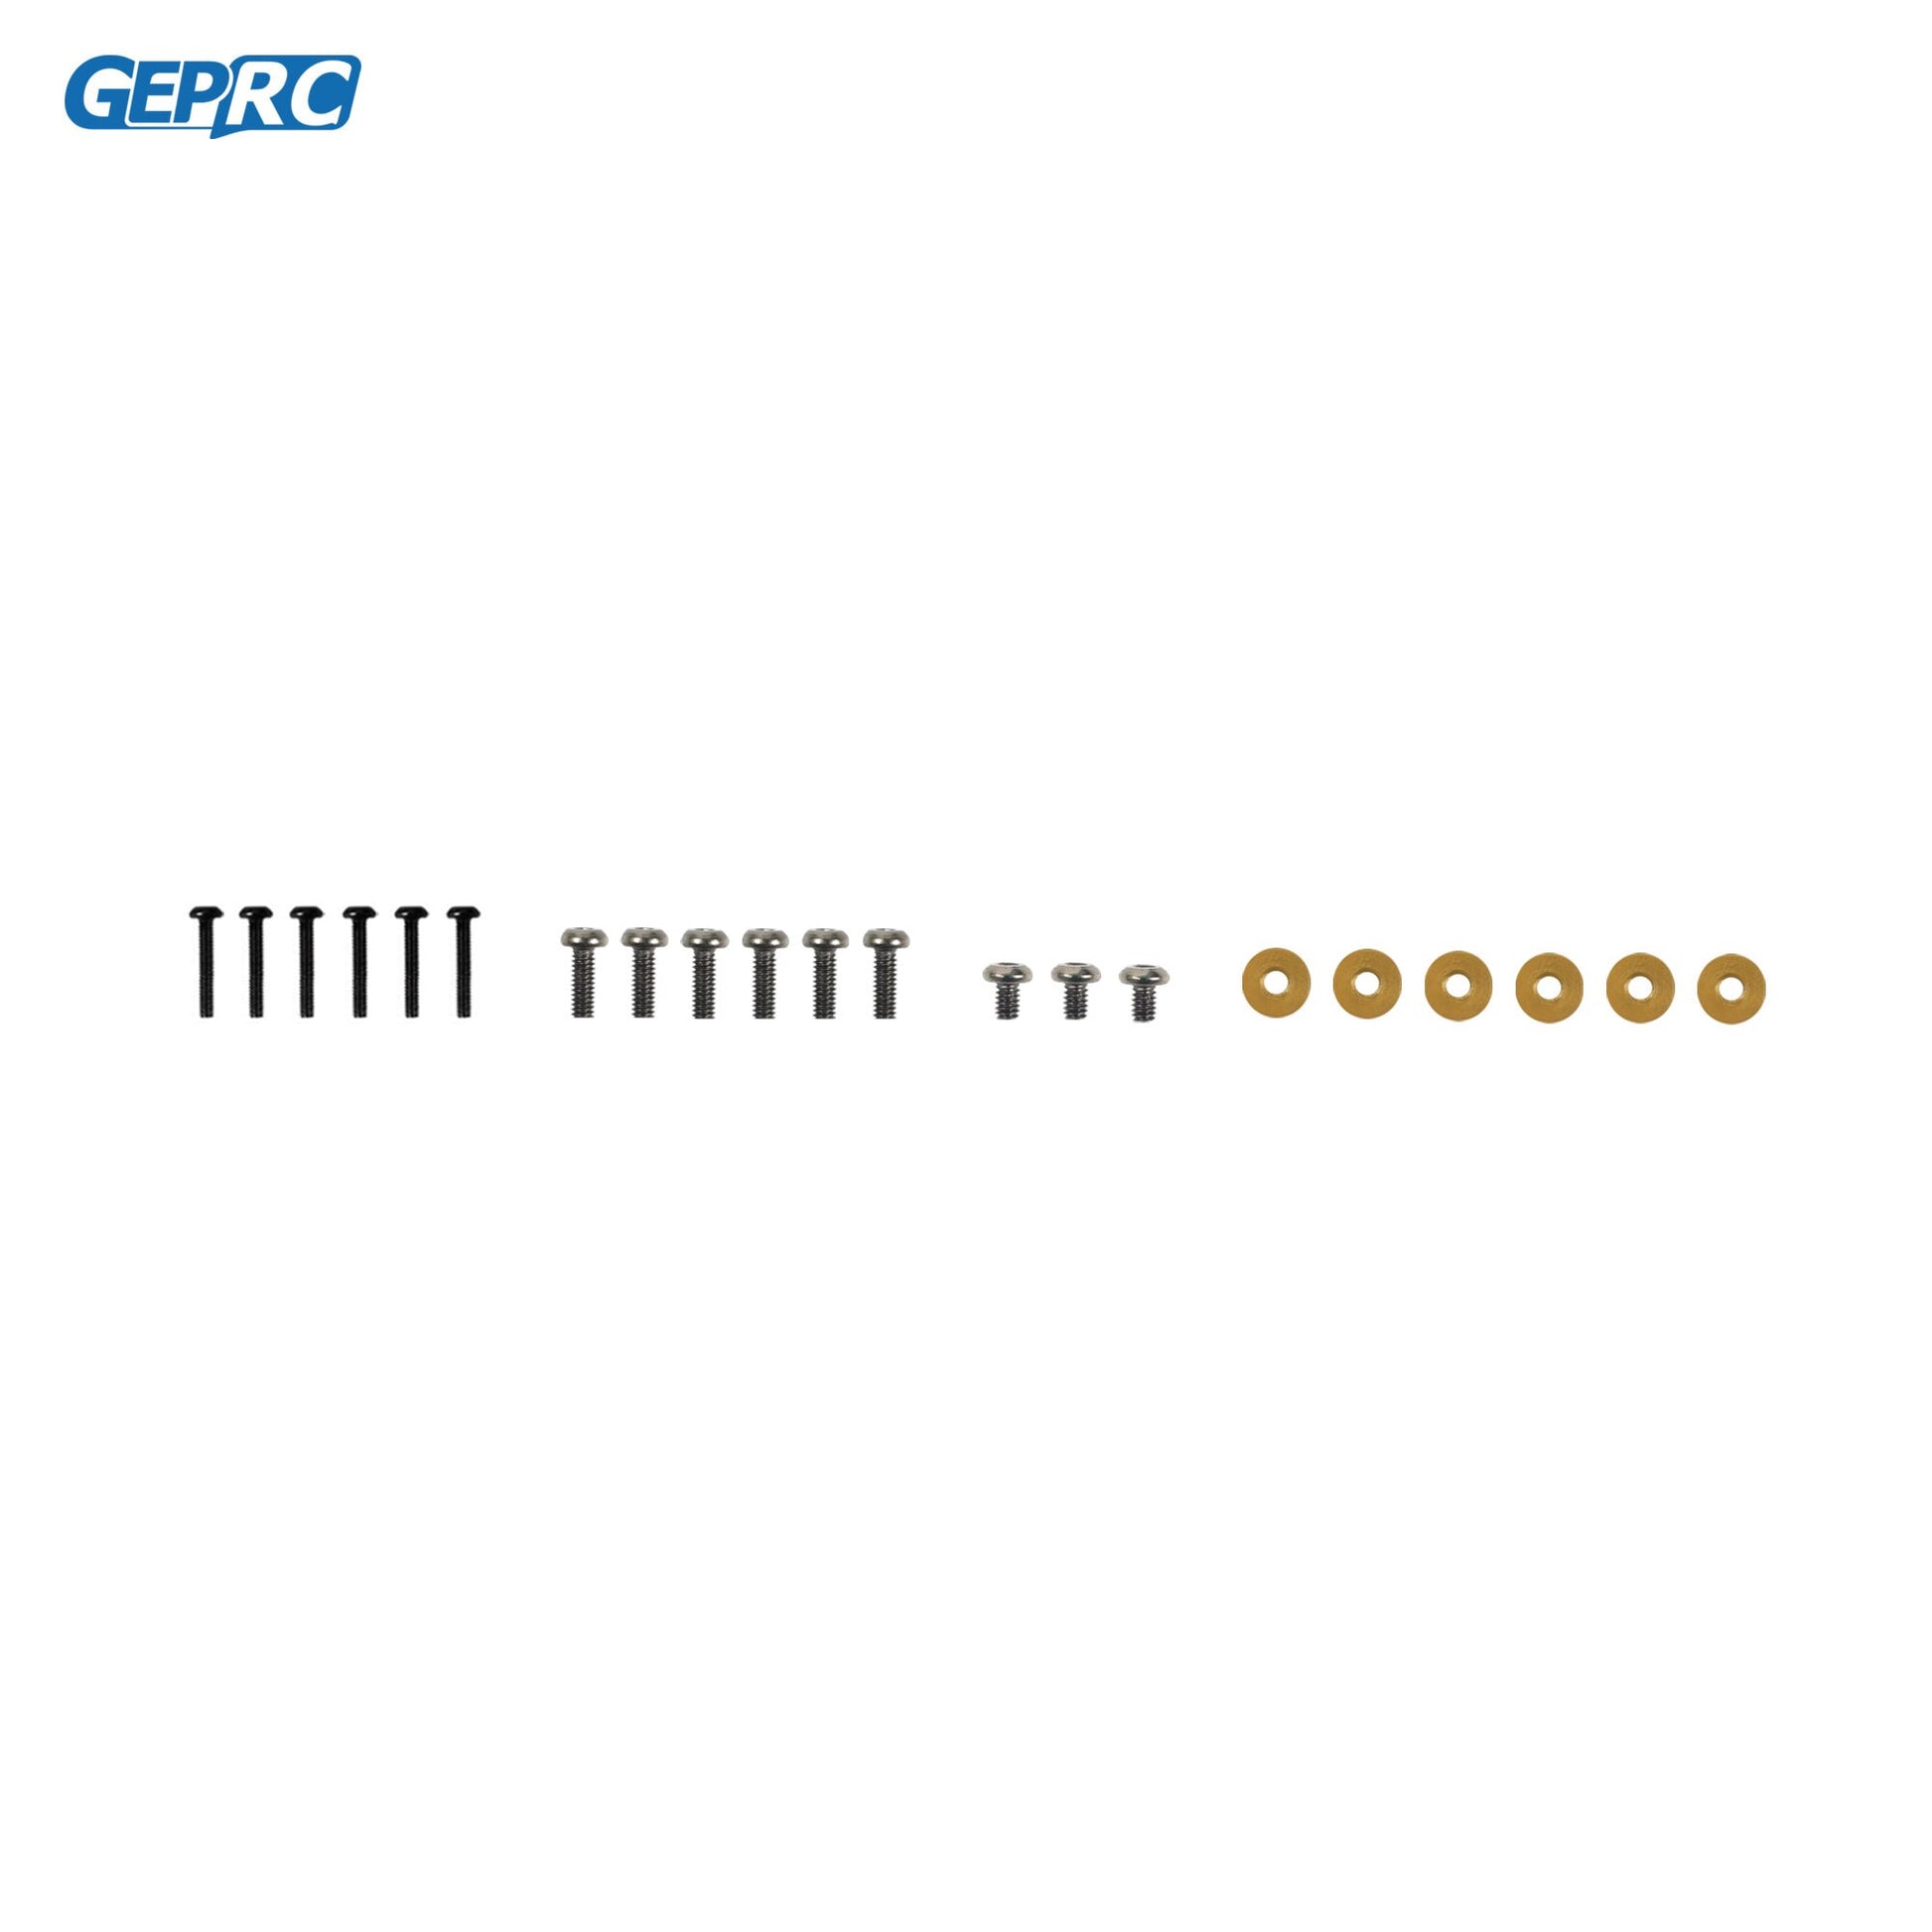 GEPRC GEP-CT30 O3 Frame Parts, GEPRC TTTTTT TTt oo0000 .